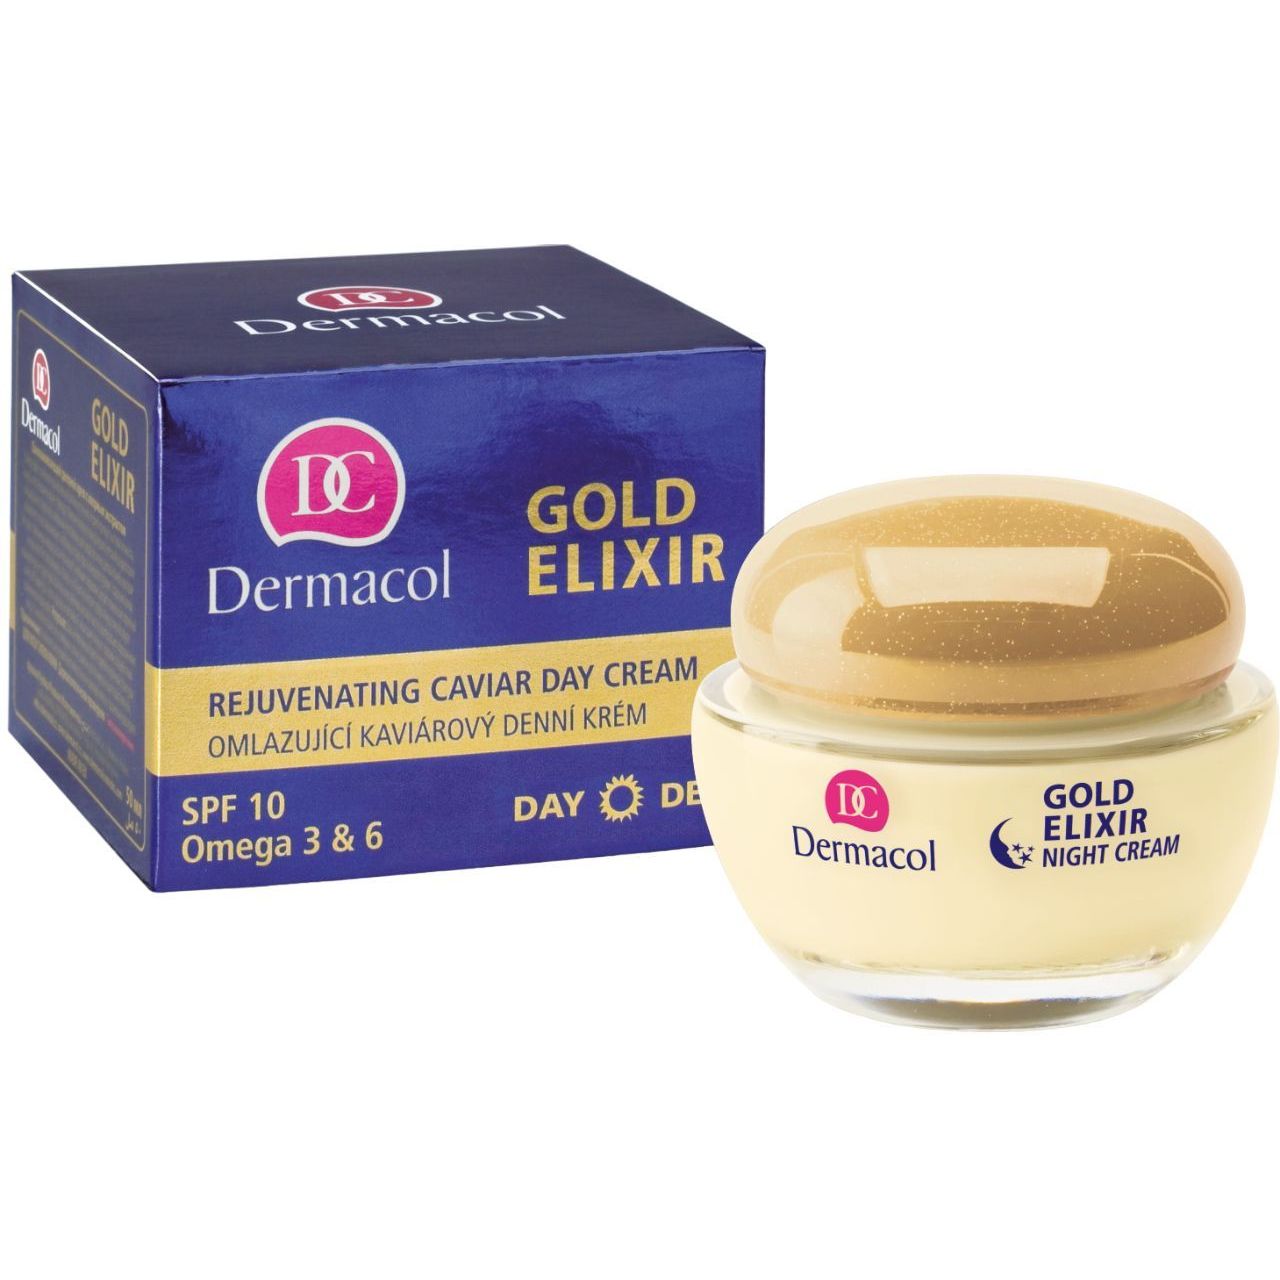 Крем дневной омолаживающий Dermacol Gold Elixir Rejuvenating Caviar Day Cream SPF 10, 50 мл - фото 2